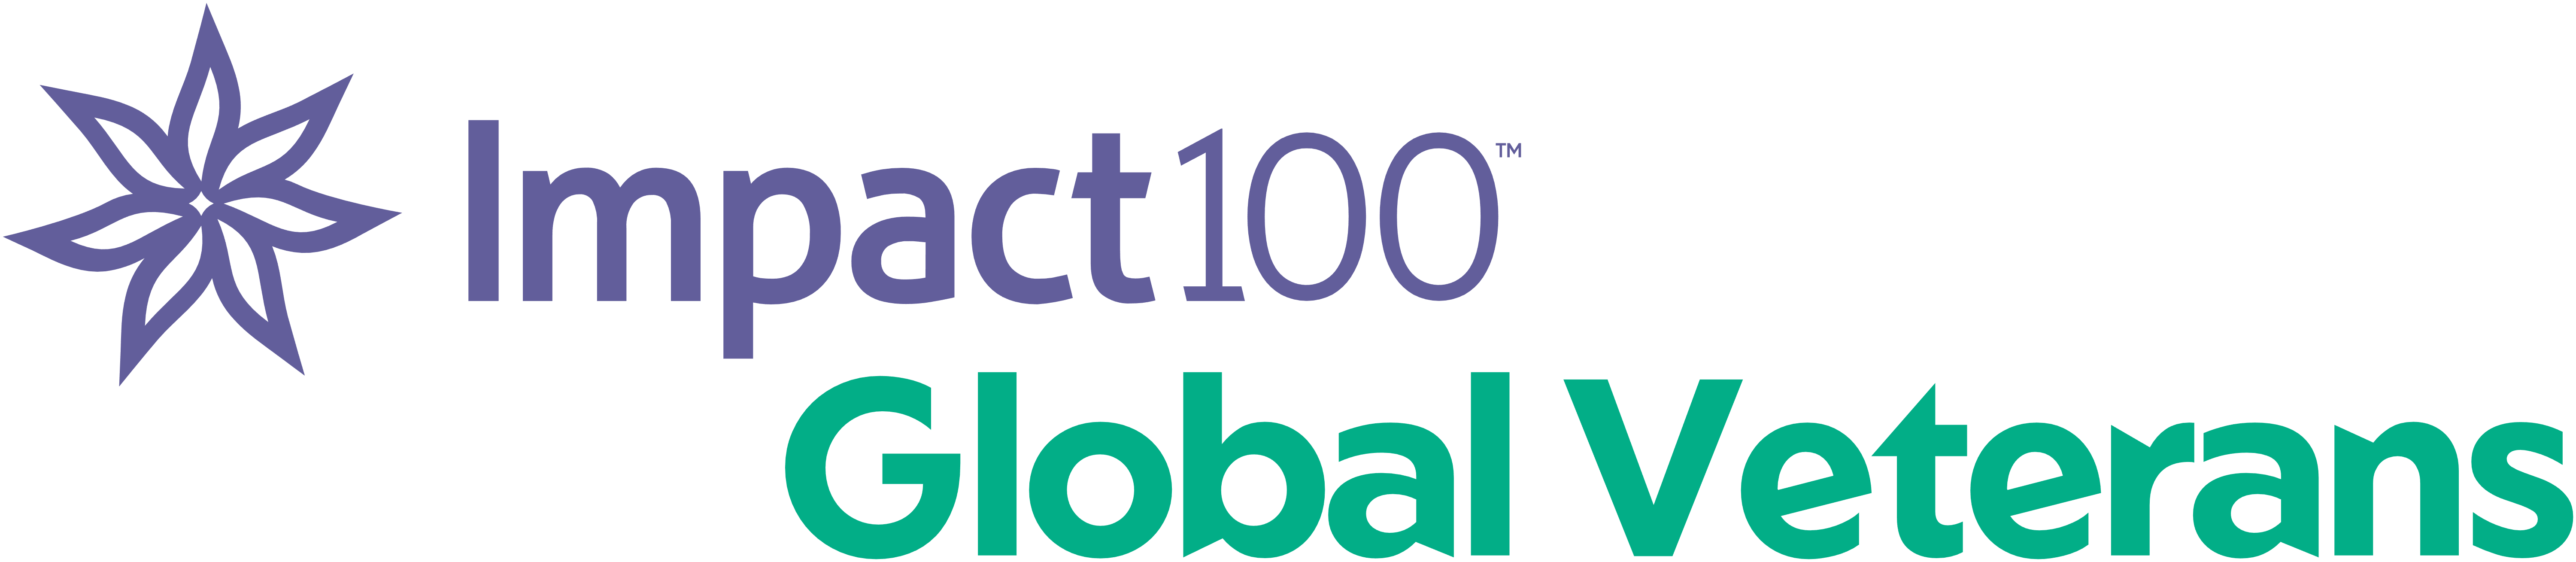 Impact100 Global Veterans